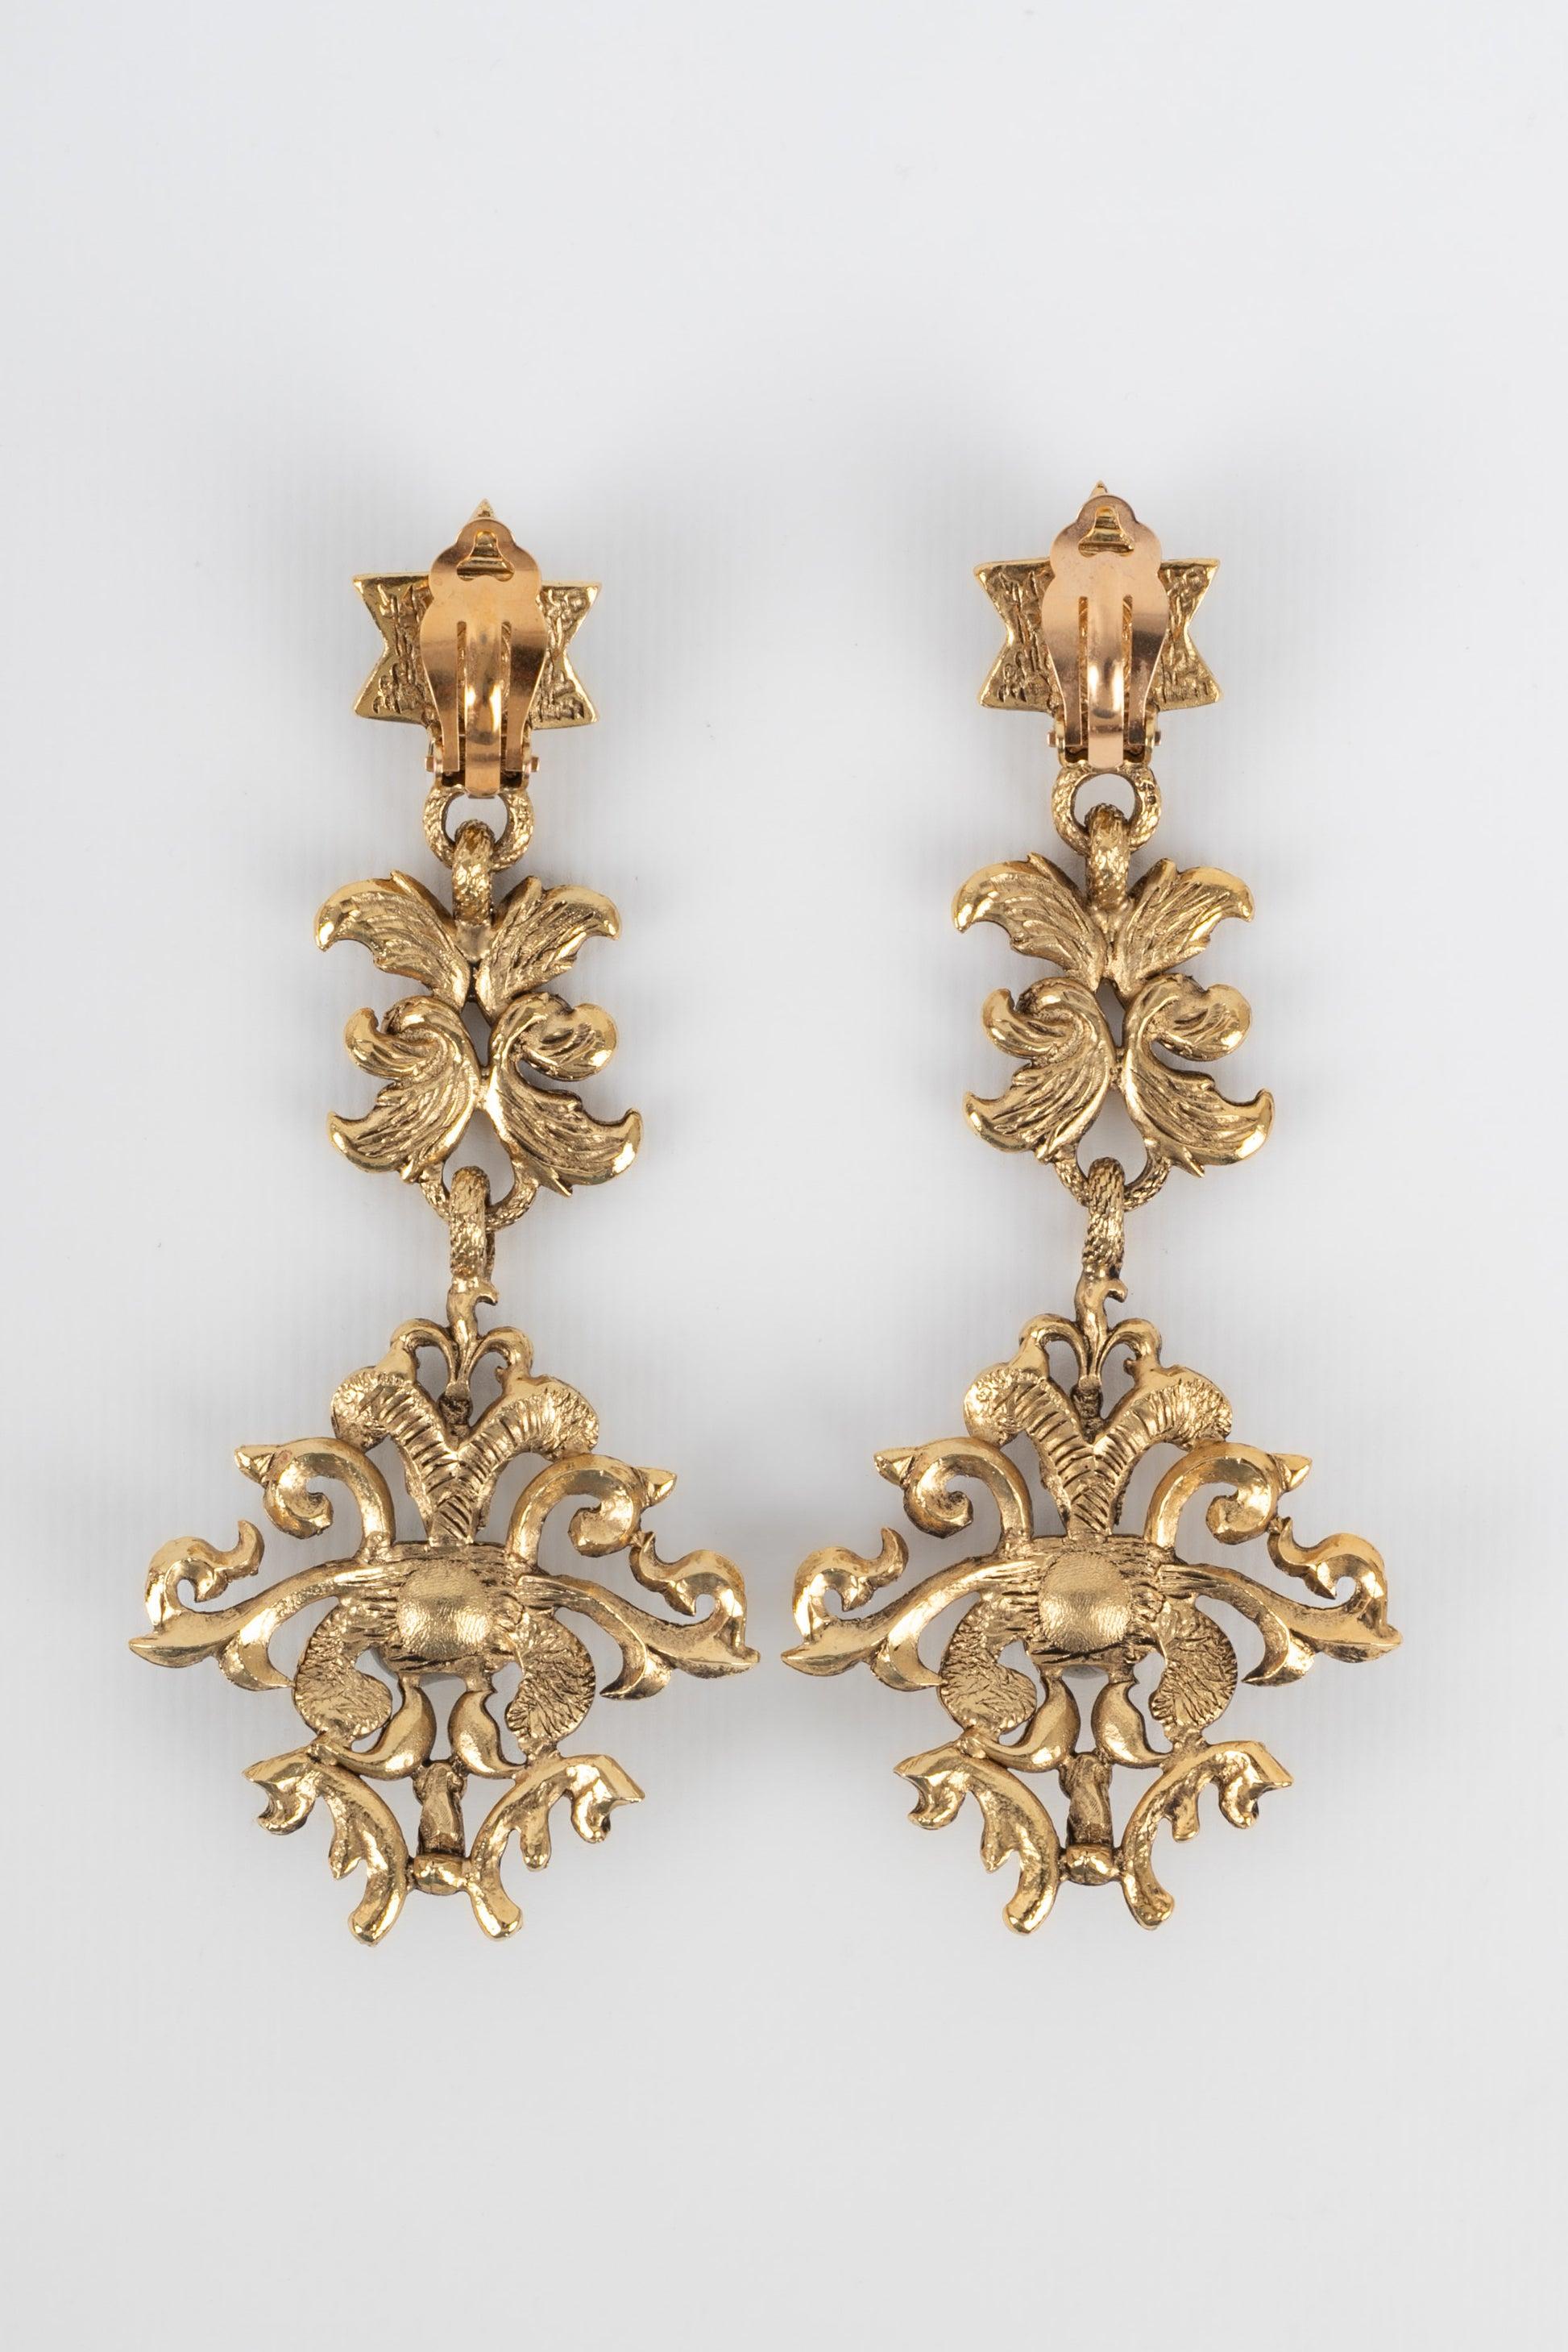 Dior - Beeindruckende Ohrringe aus goldenem Metall.

Zusätzliche Informationen:
Zustand: Sehr guter Zustand
Abmessungen: Länge: 11.5 cm

Sellers Referenz: BO213